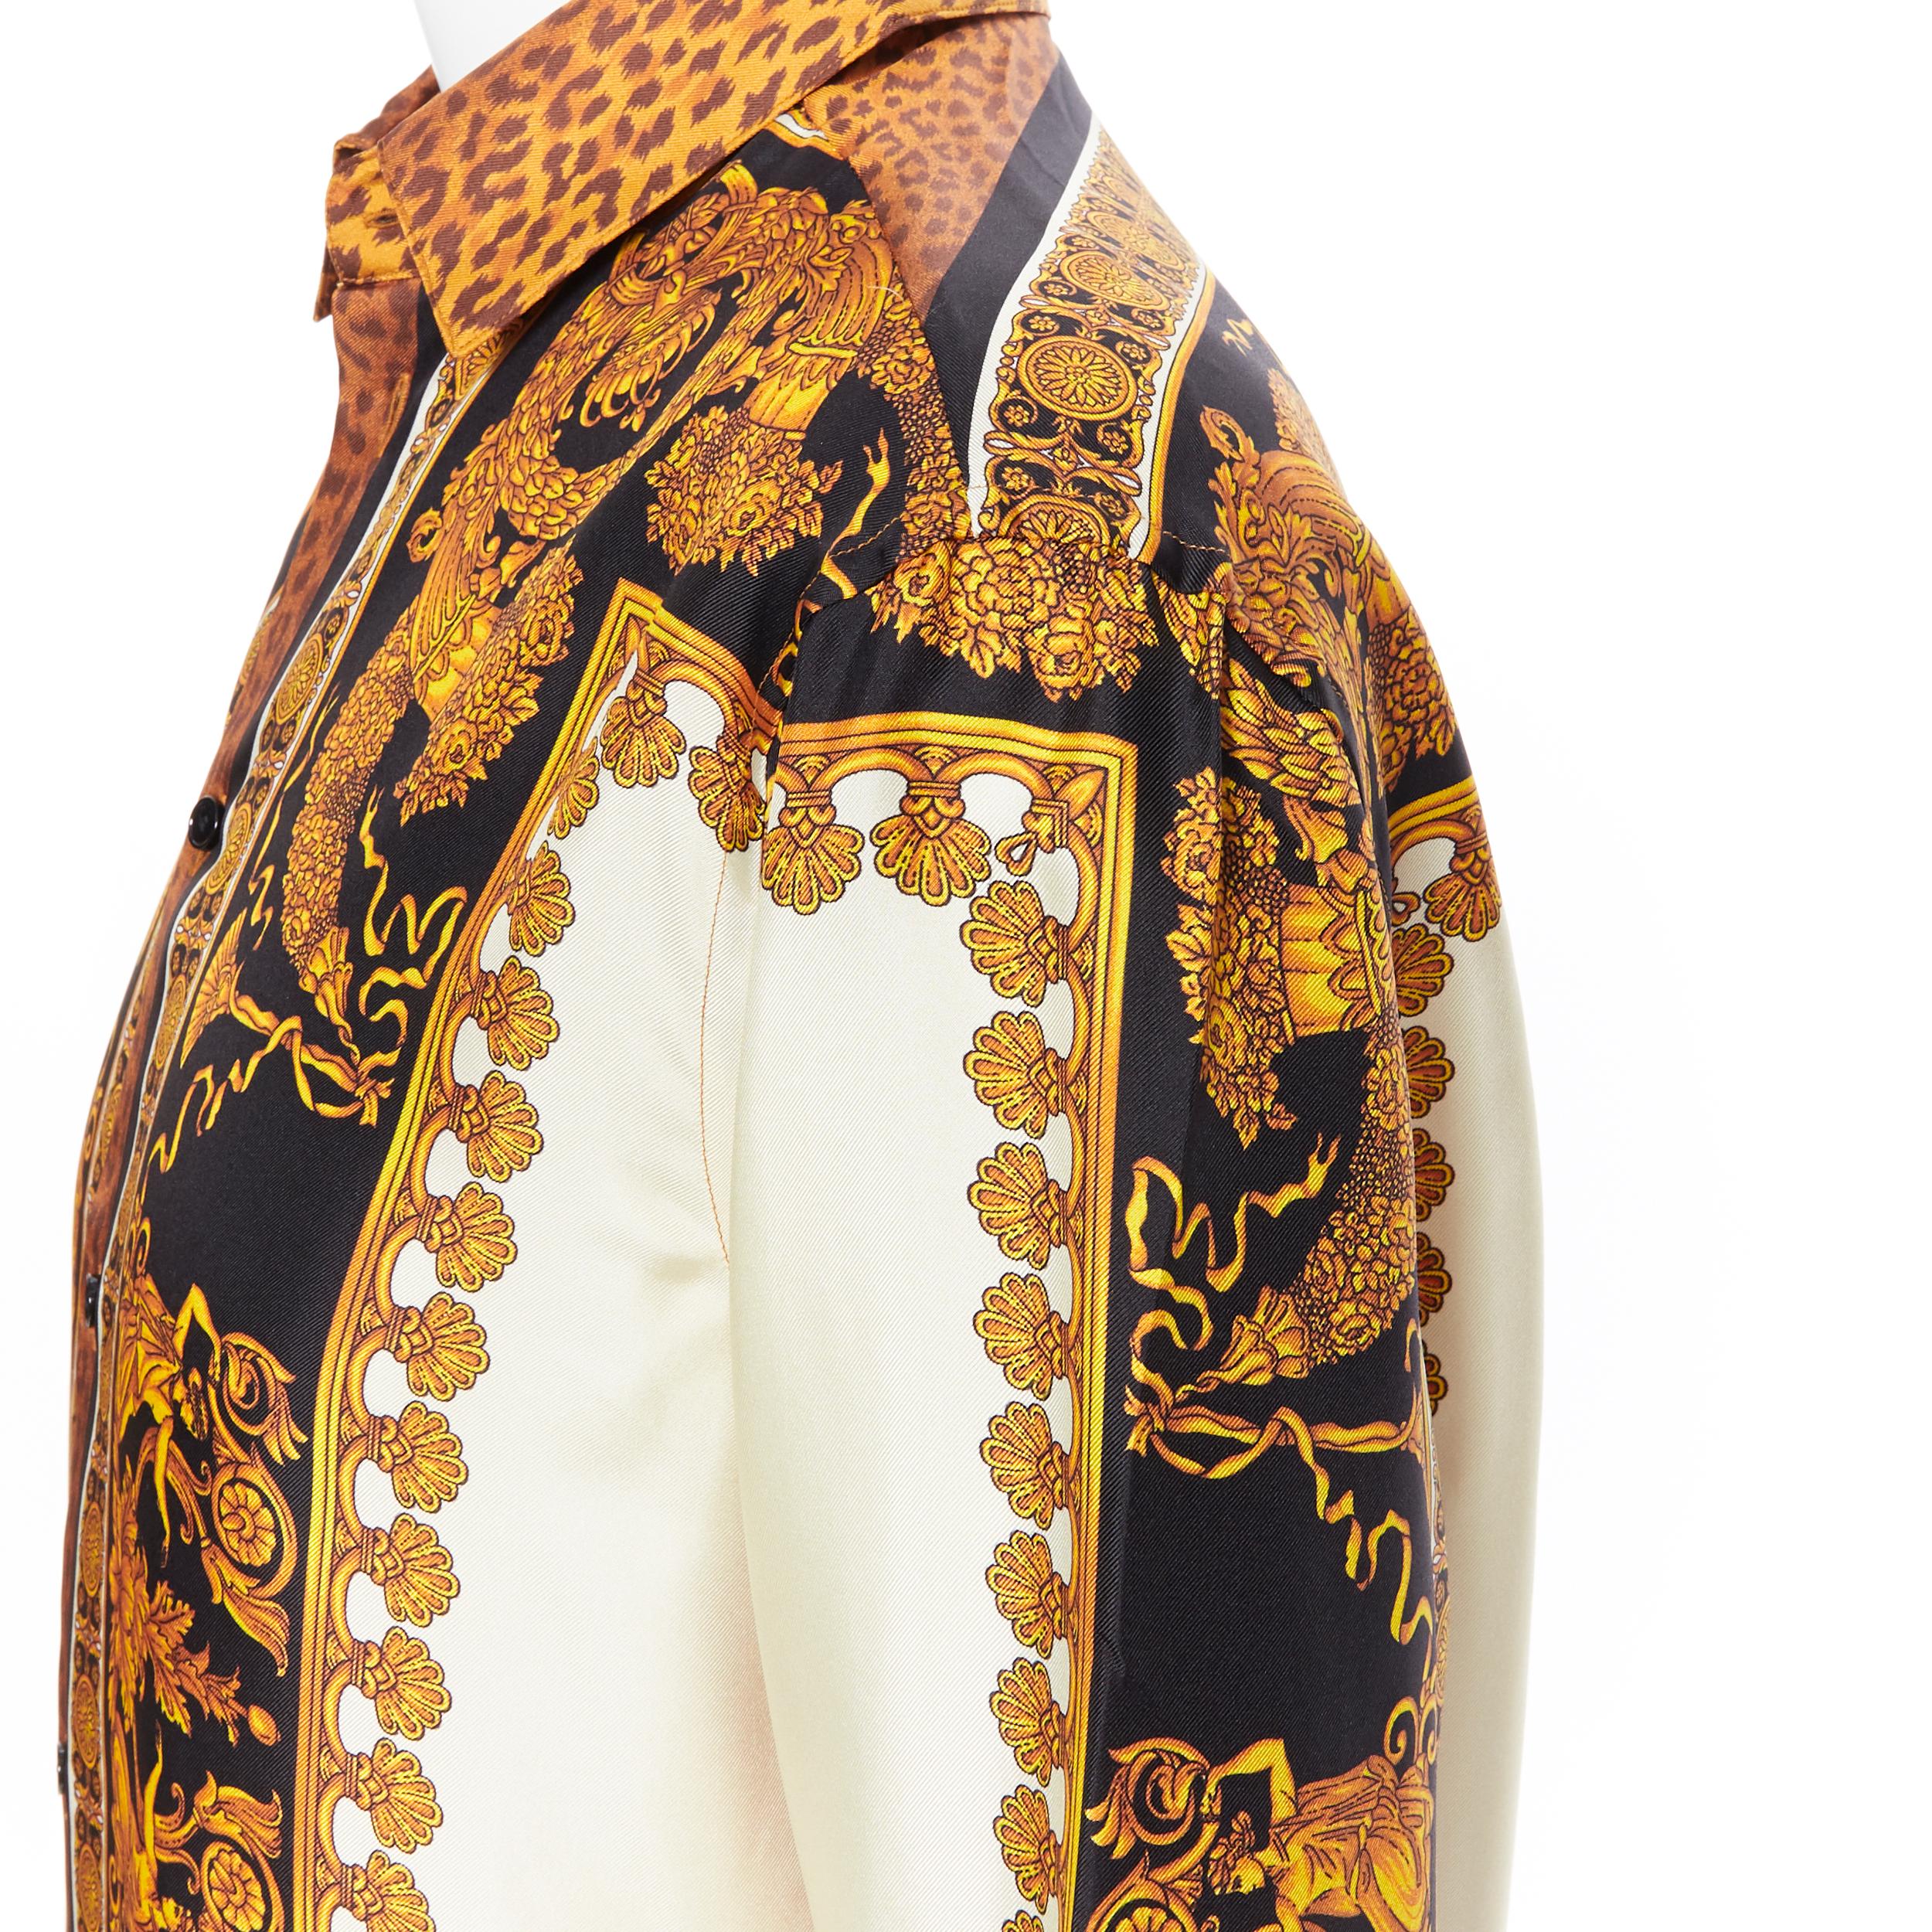 new VERSACE AW18 Runway Wild Leopard gold baroque print 100% silk shirt EU38 S 5